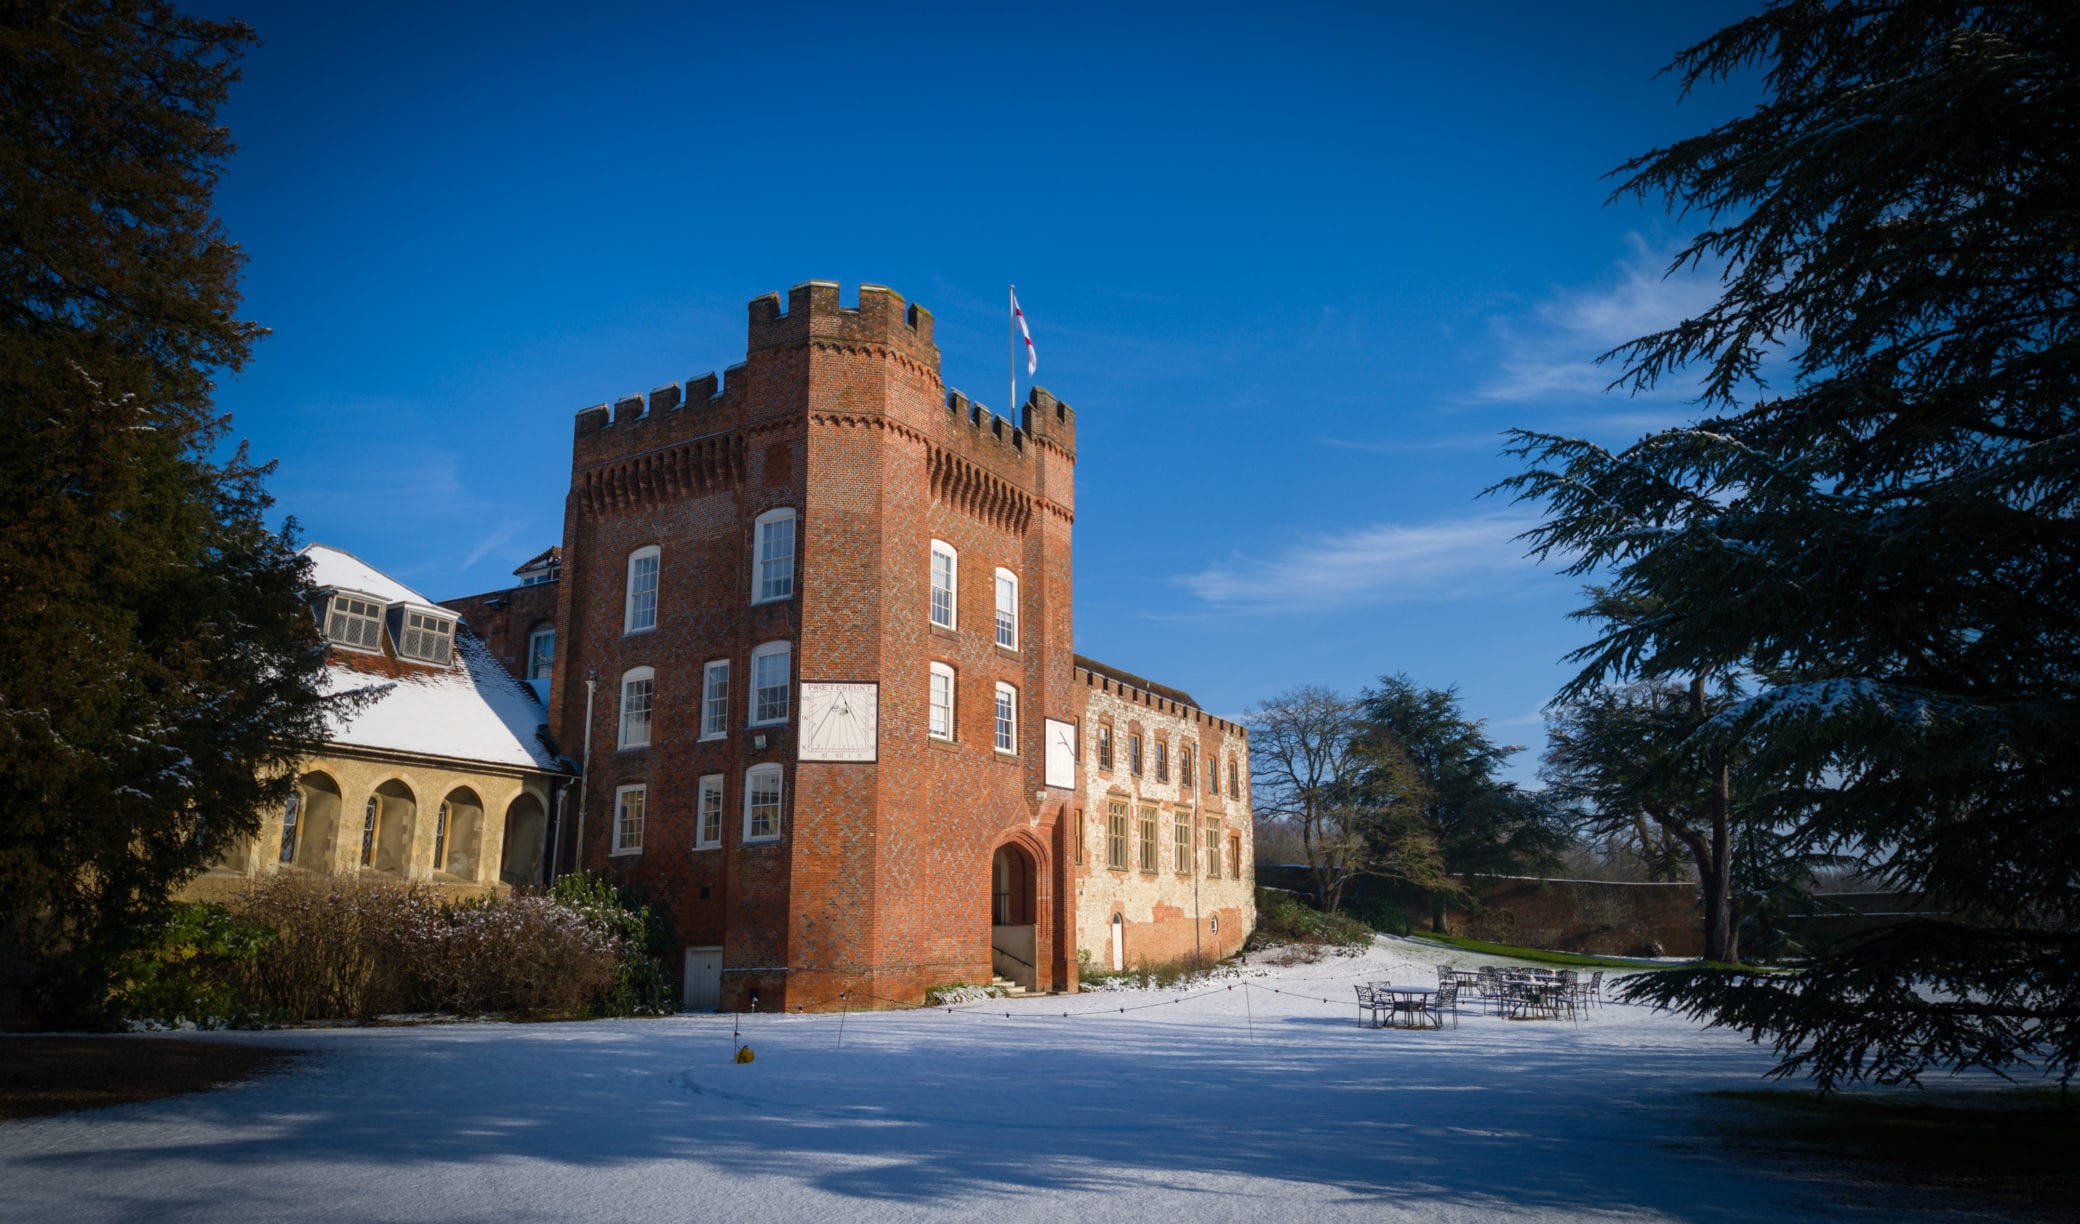 Winter weddings at Farnham Castle in Surrey